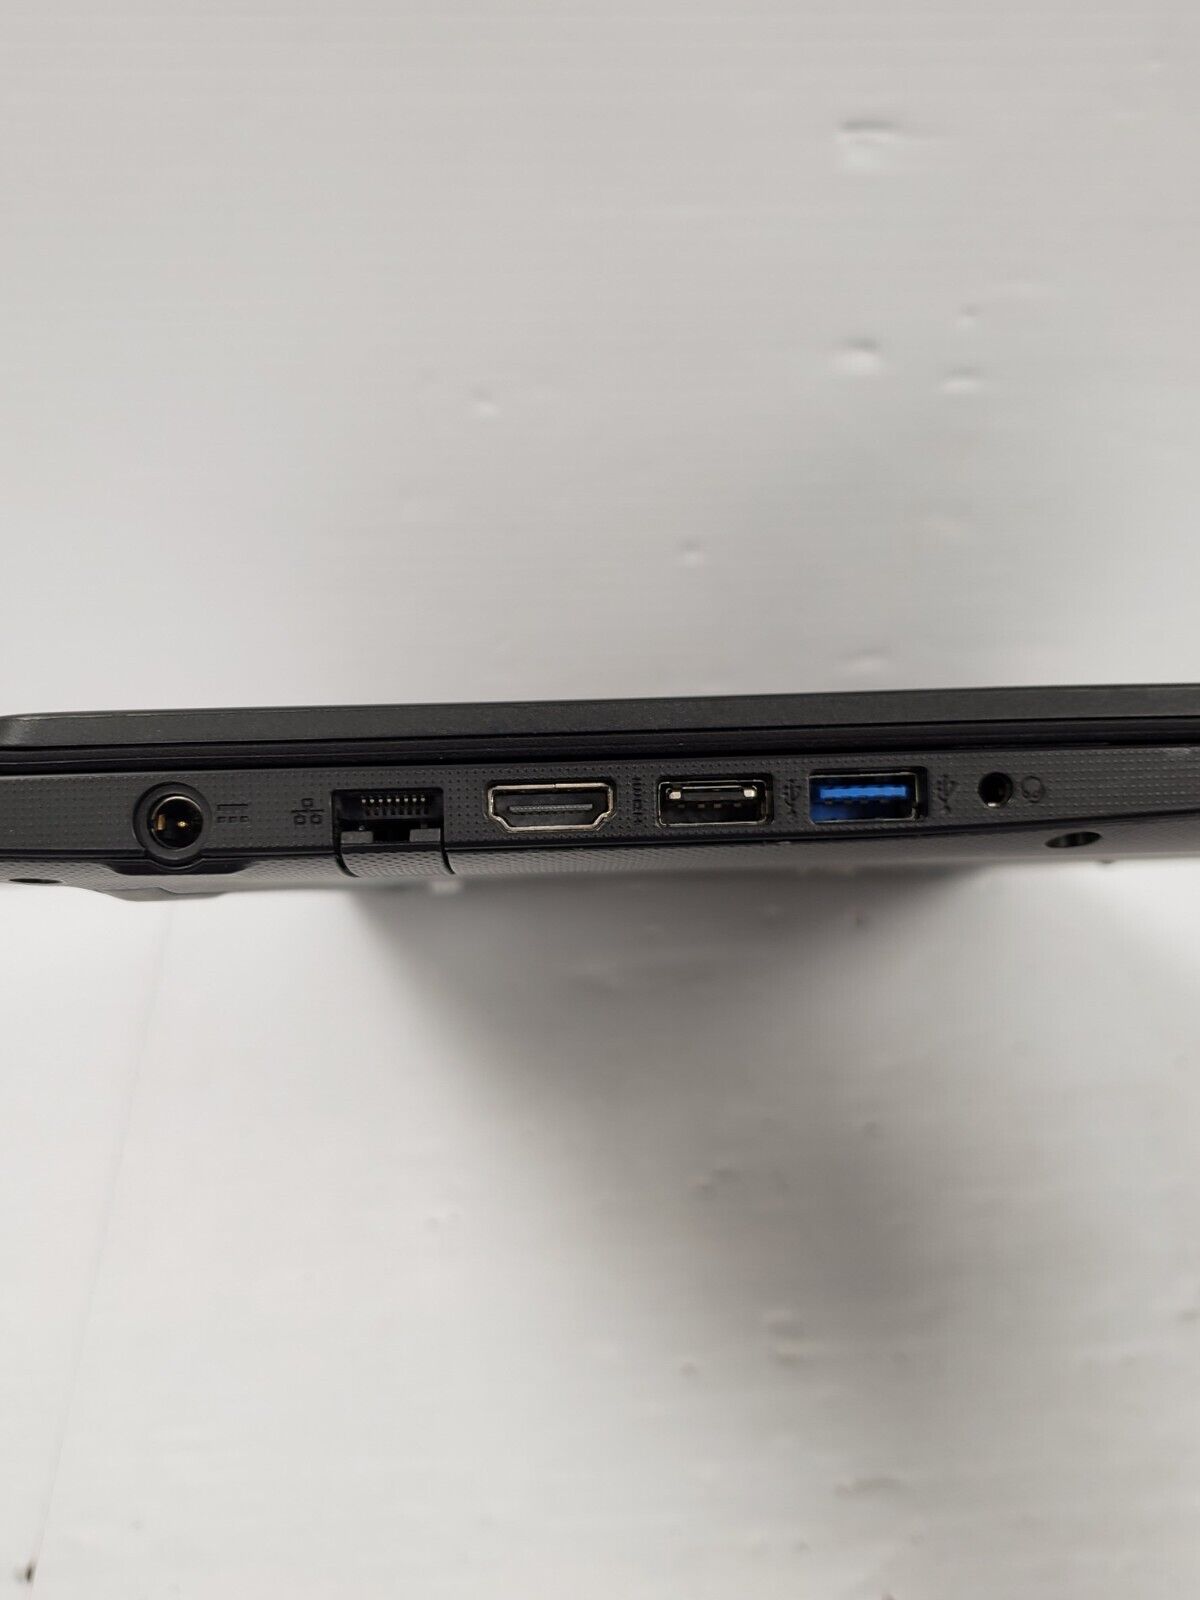 (52726-1) Acer N19C1 Laptop